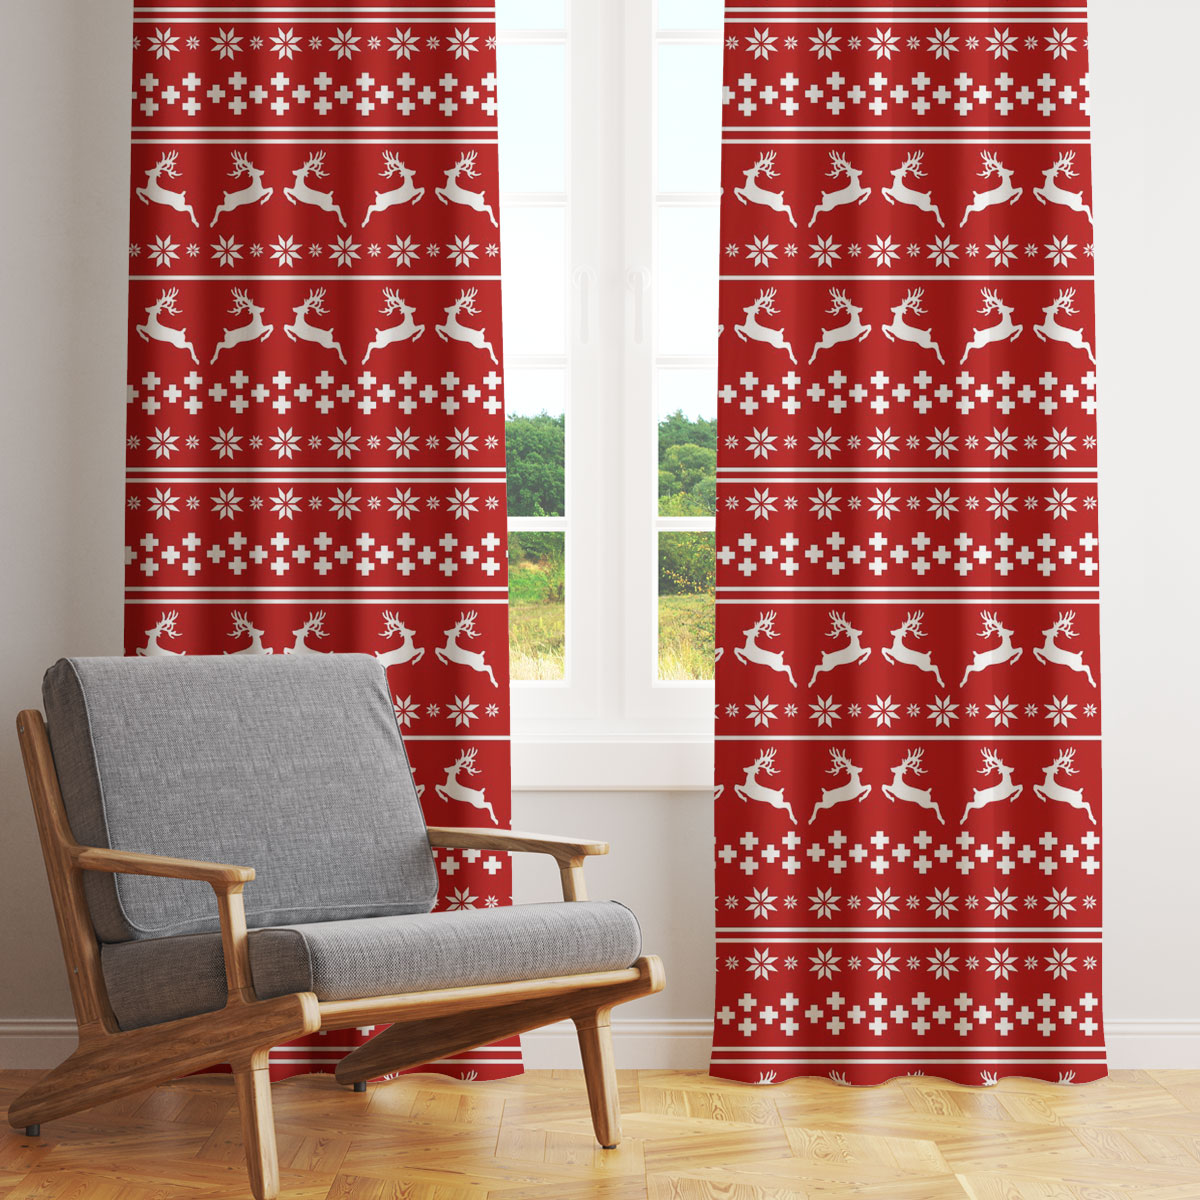 Christmas Reindeer, Snowflake Pattern Window Curtain